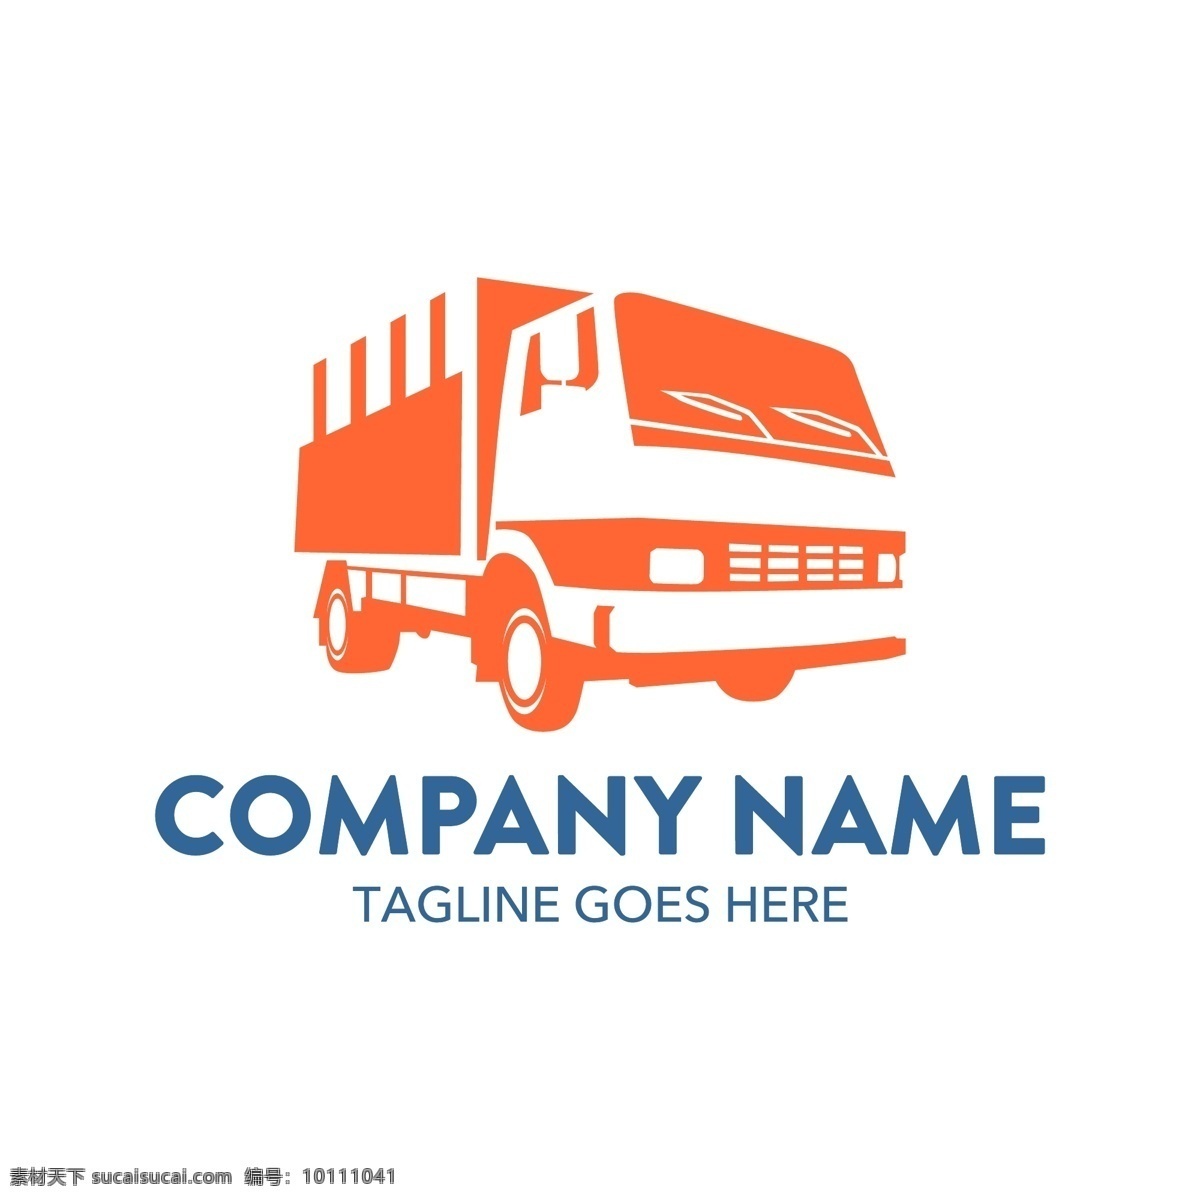 搬家公司 创意 公司 logo 广告 标志 汽车 矢量素材 宣传 设计素材